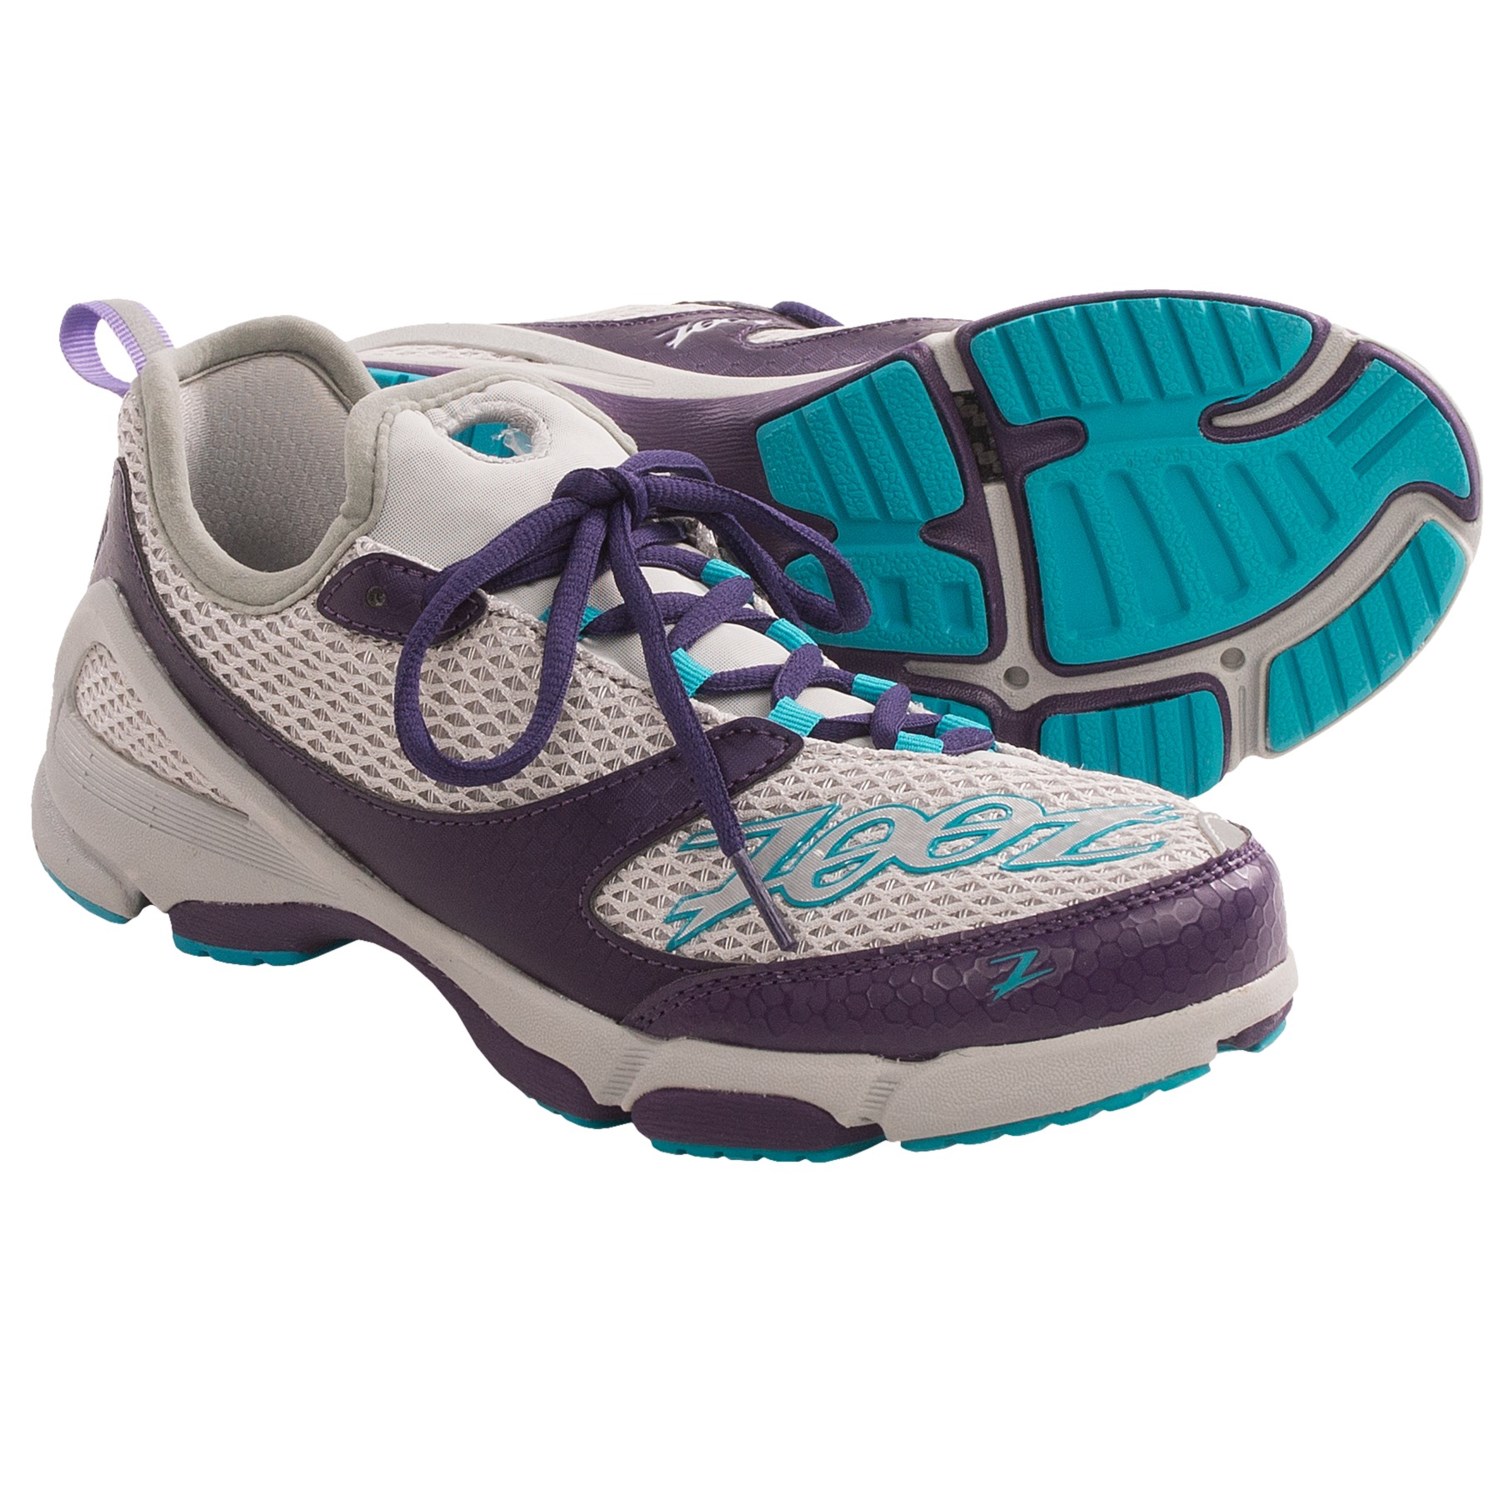 ... TT Trainer Running Shoes (For Women) in Light GreyBlackberryReef